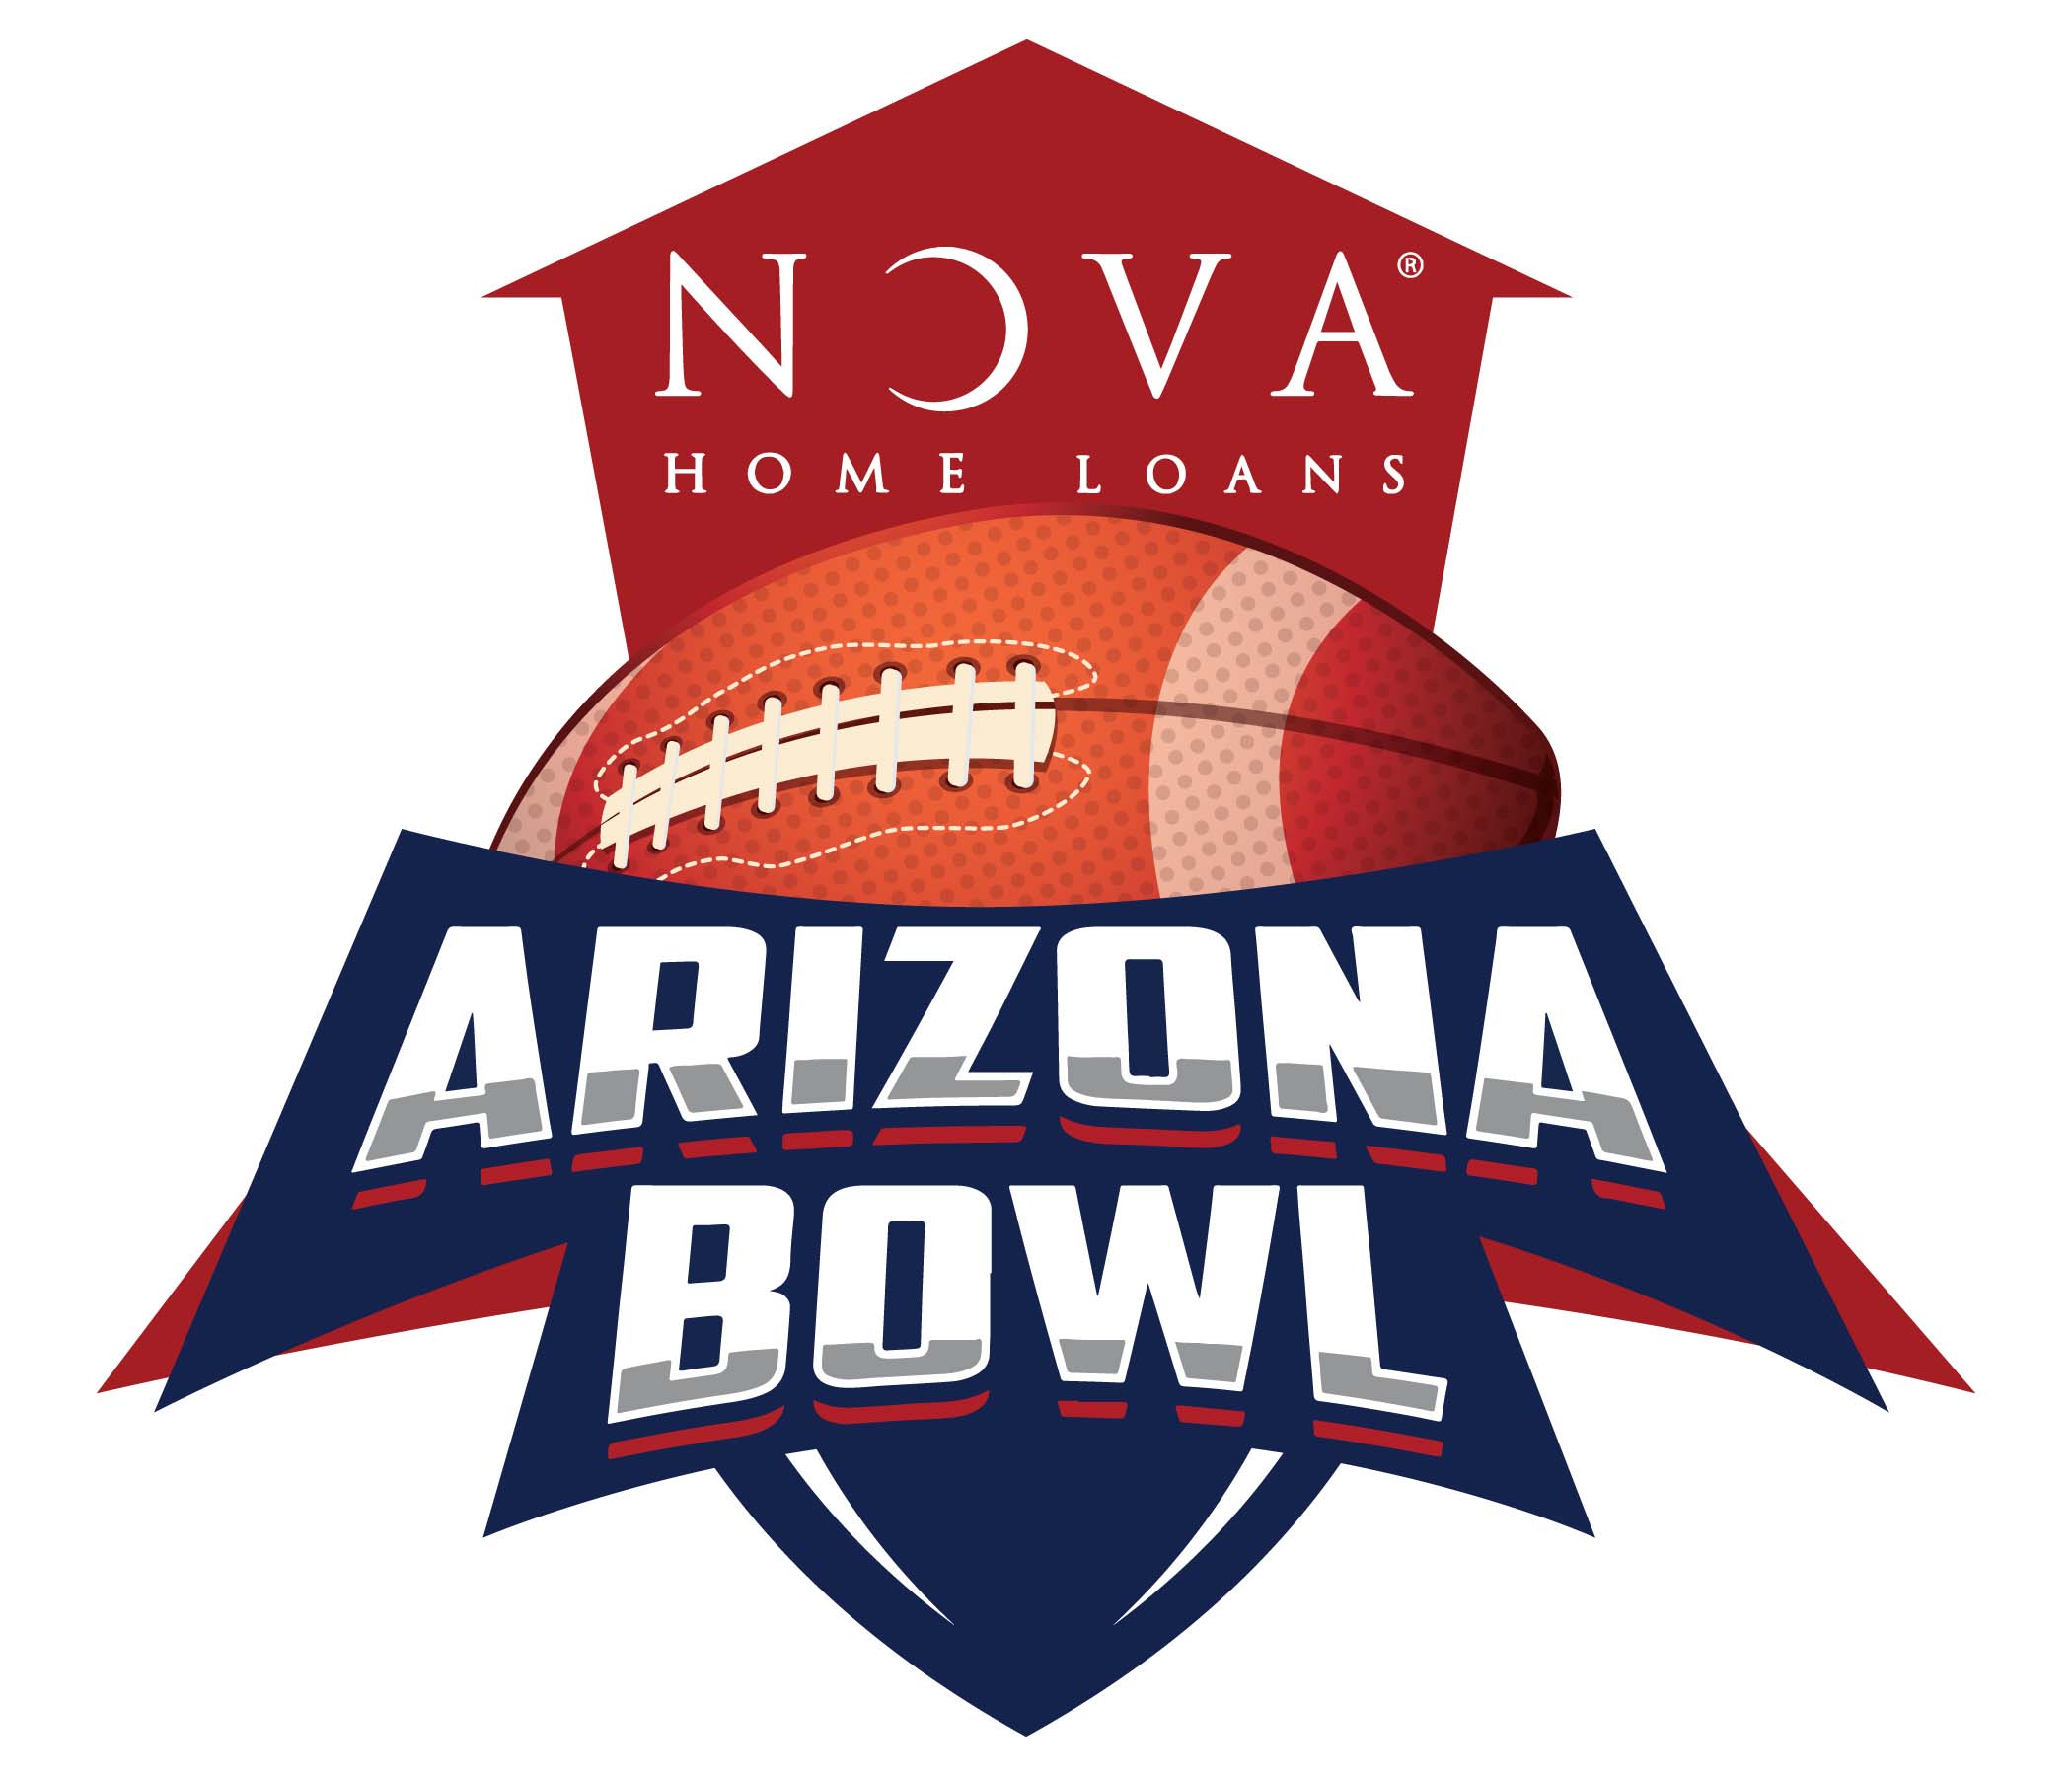 NOVA Home Loans Arizona Bowl logo